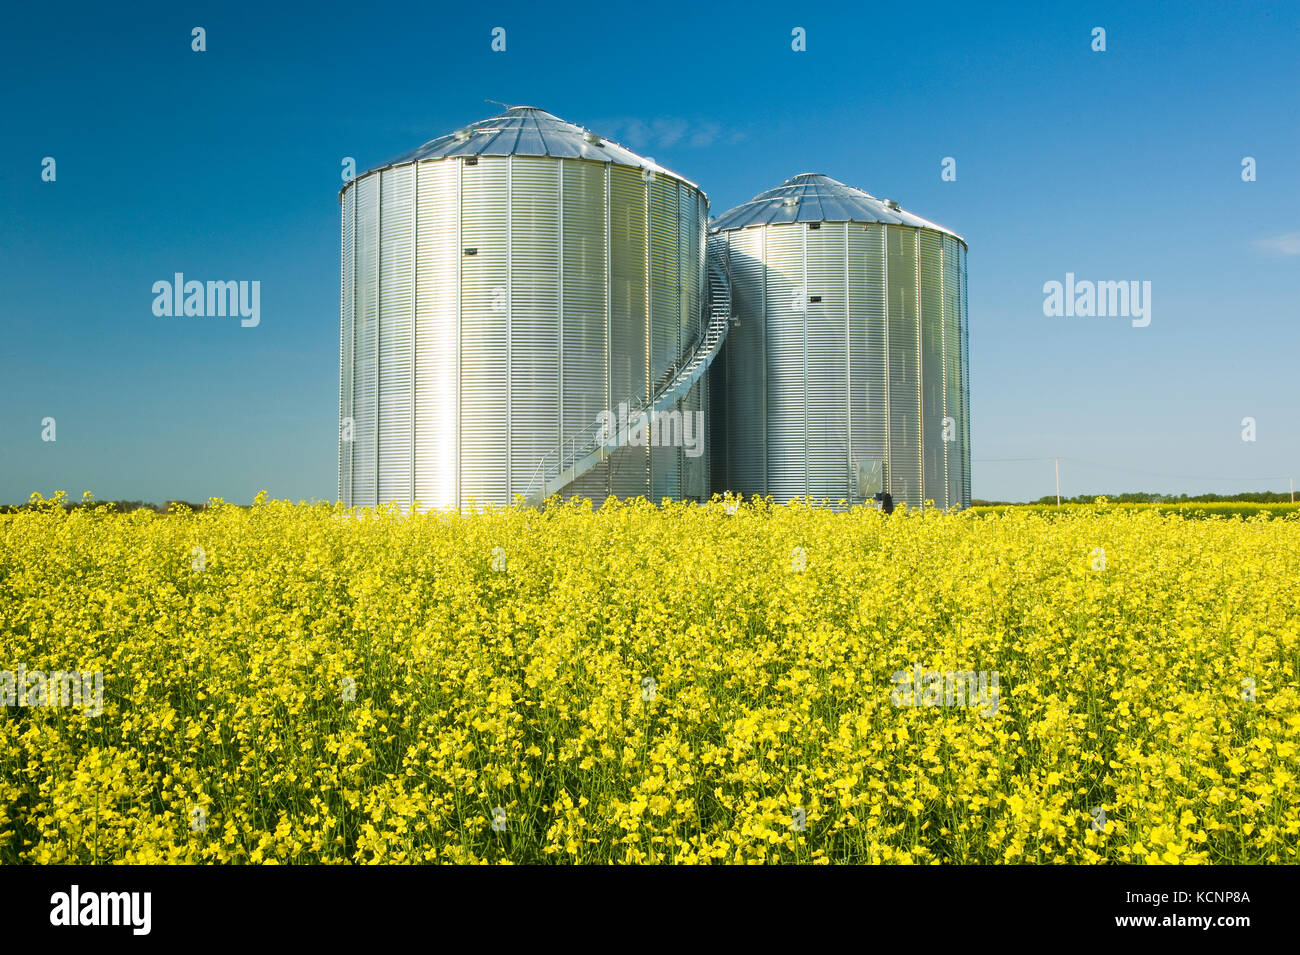 Un champ de floraison du canola à cellules à grains(silos) dans l'arrière-plan, Saskatchewan, Canada Banque D'Images